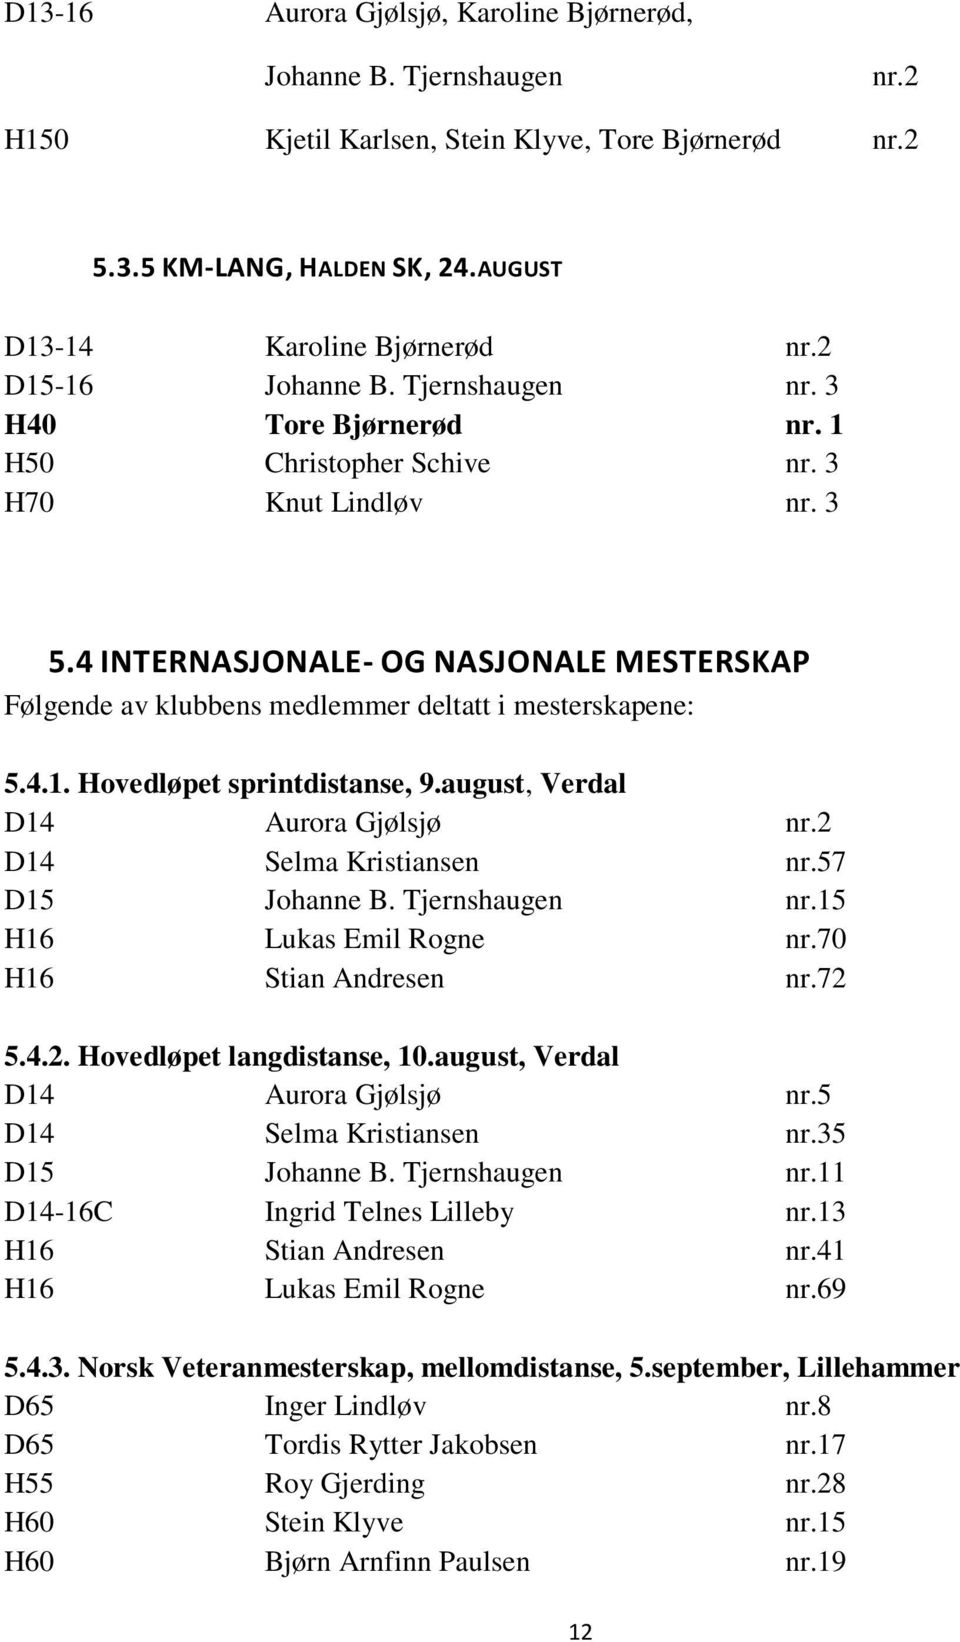 4 INTERNASJONALE- OG NASJONALE MESTERSKAP Følgende av klubbens medlemmer deltatt i mesterskapene: 5.4.1. Hovedløpet sprintdistanse, 9.august, Verdal D14 Aurora Gjølsjø nr.2 D14 Selma Kristiansen nr.